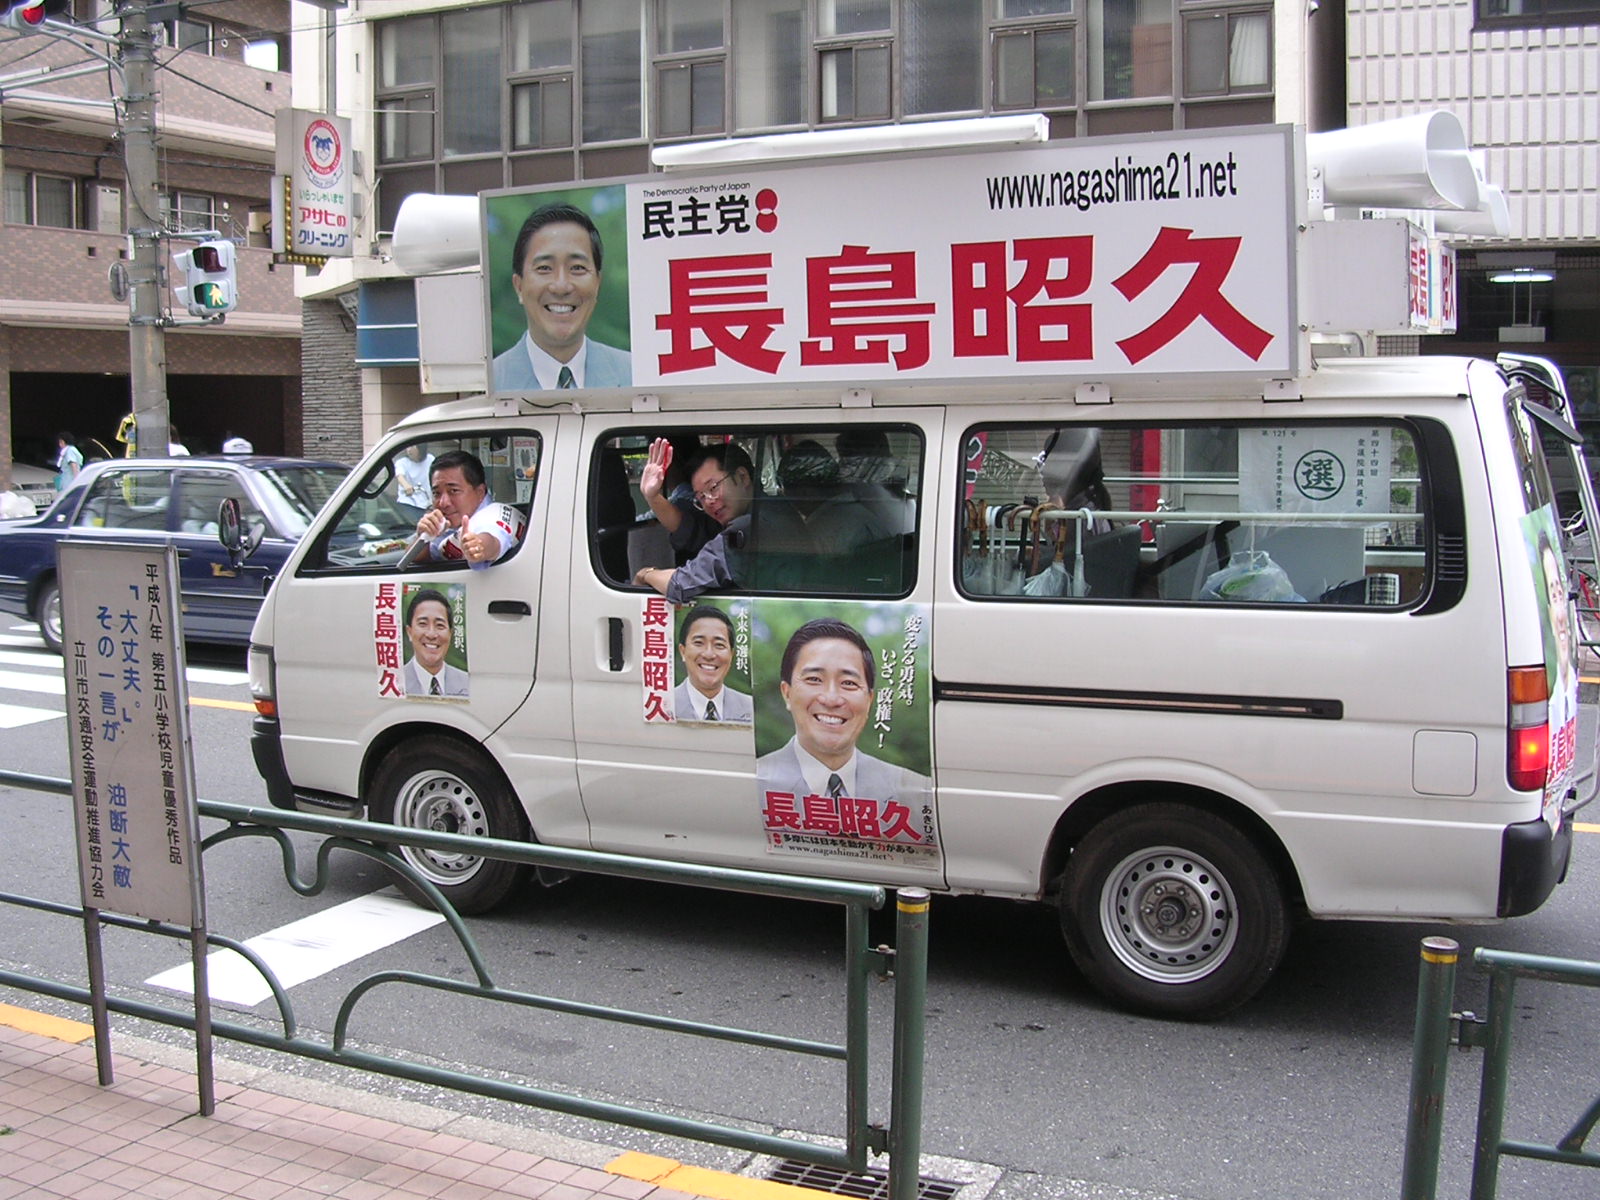 bus in japan